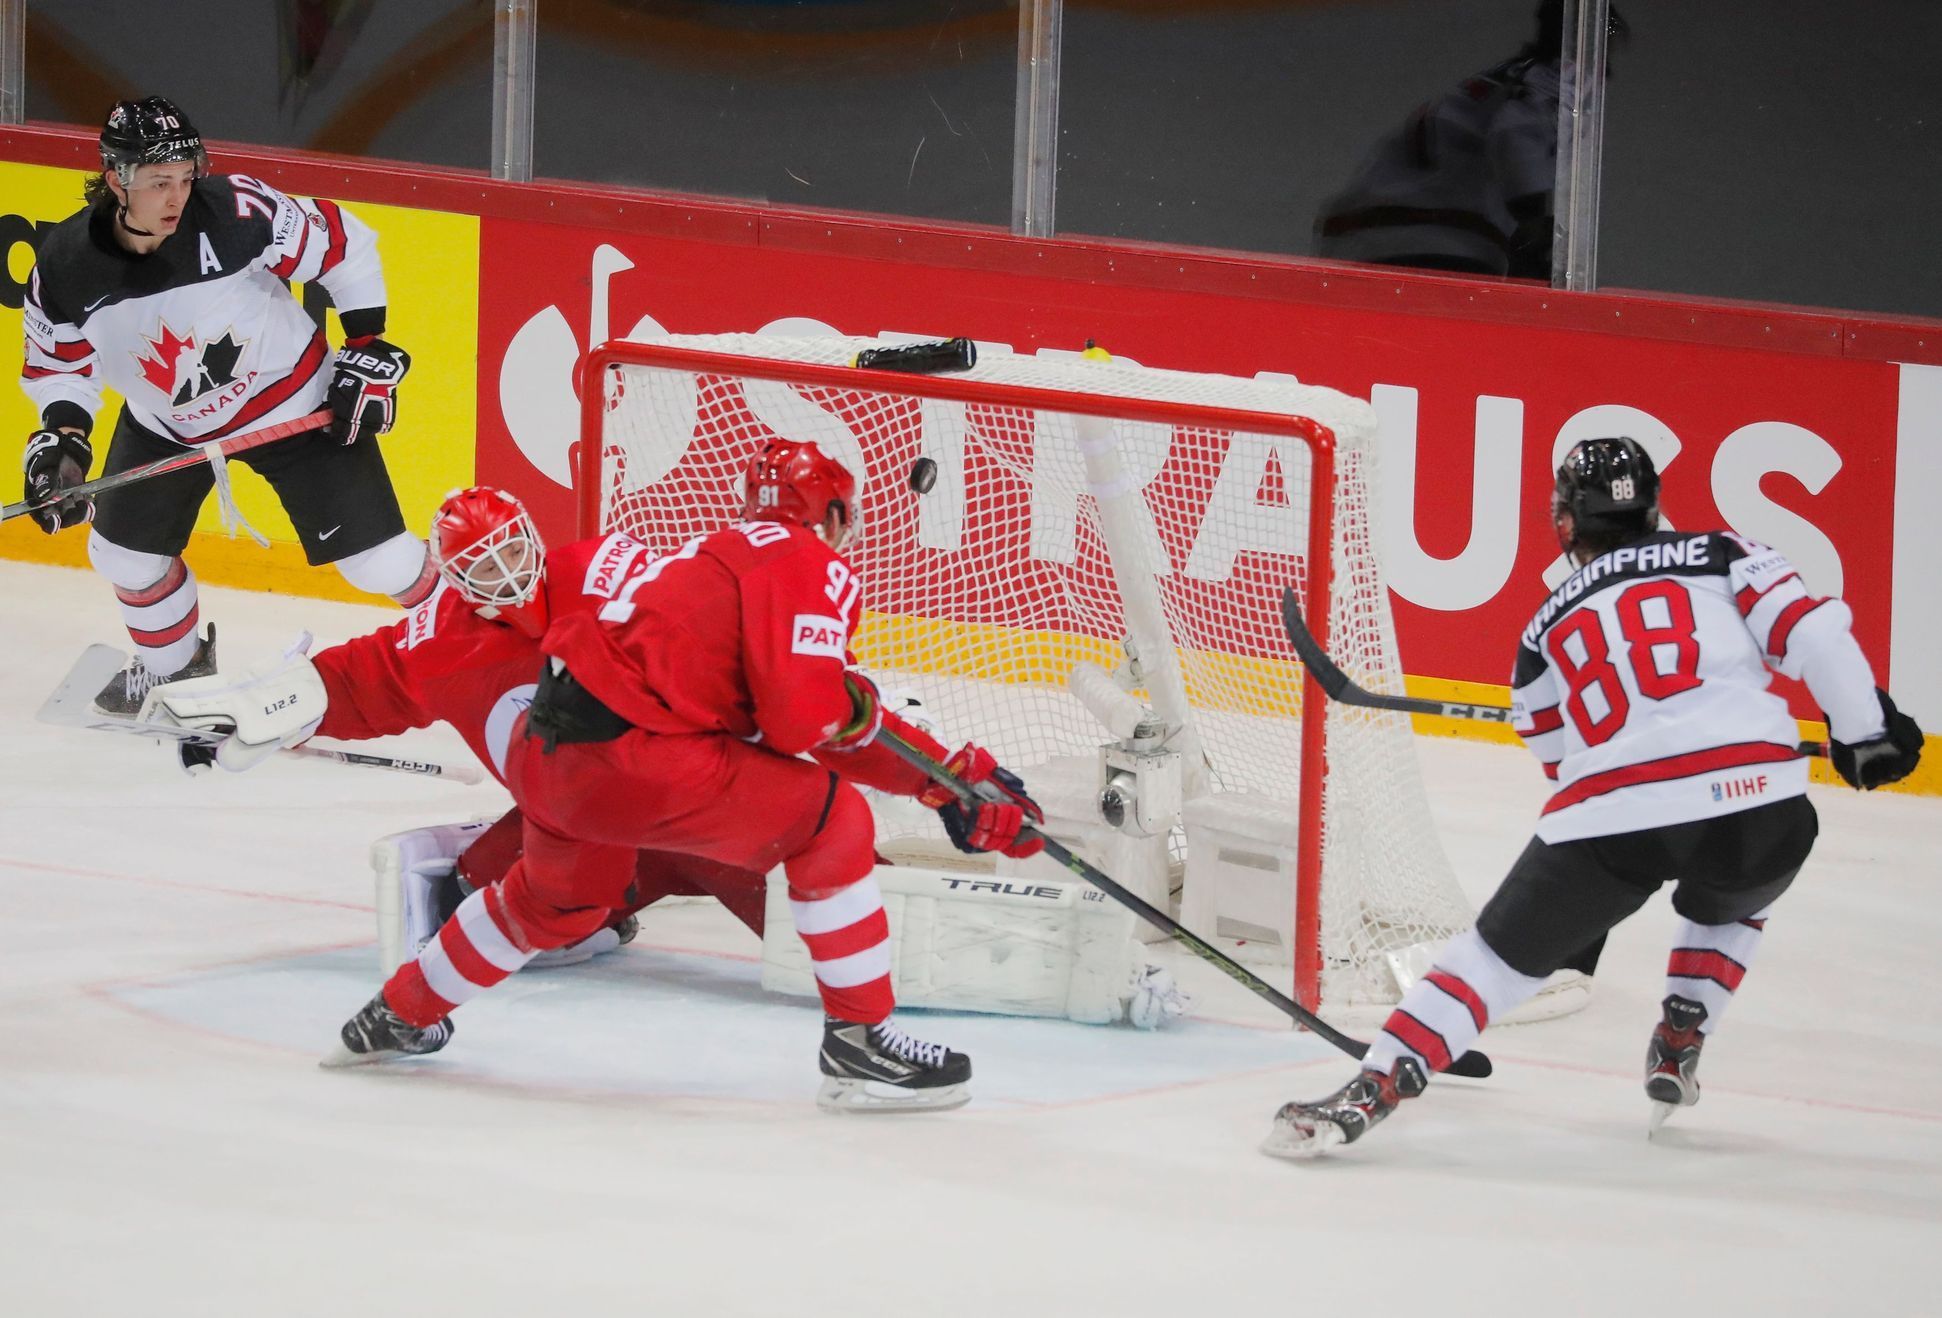 Andrew Mangiapane dává kanadský vítězný gól ve čtvrtfinále Rusko - Kanada na MS 2021